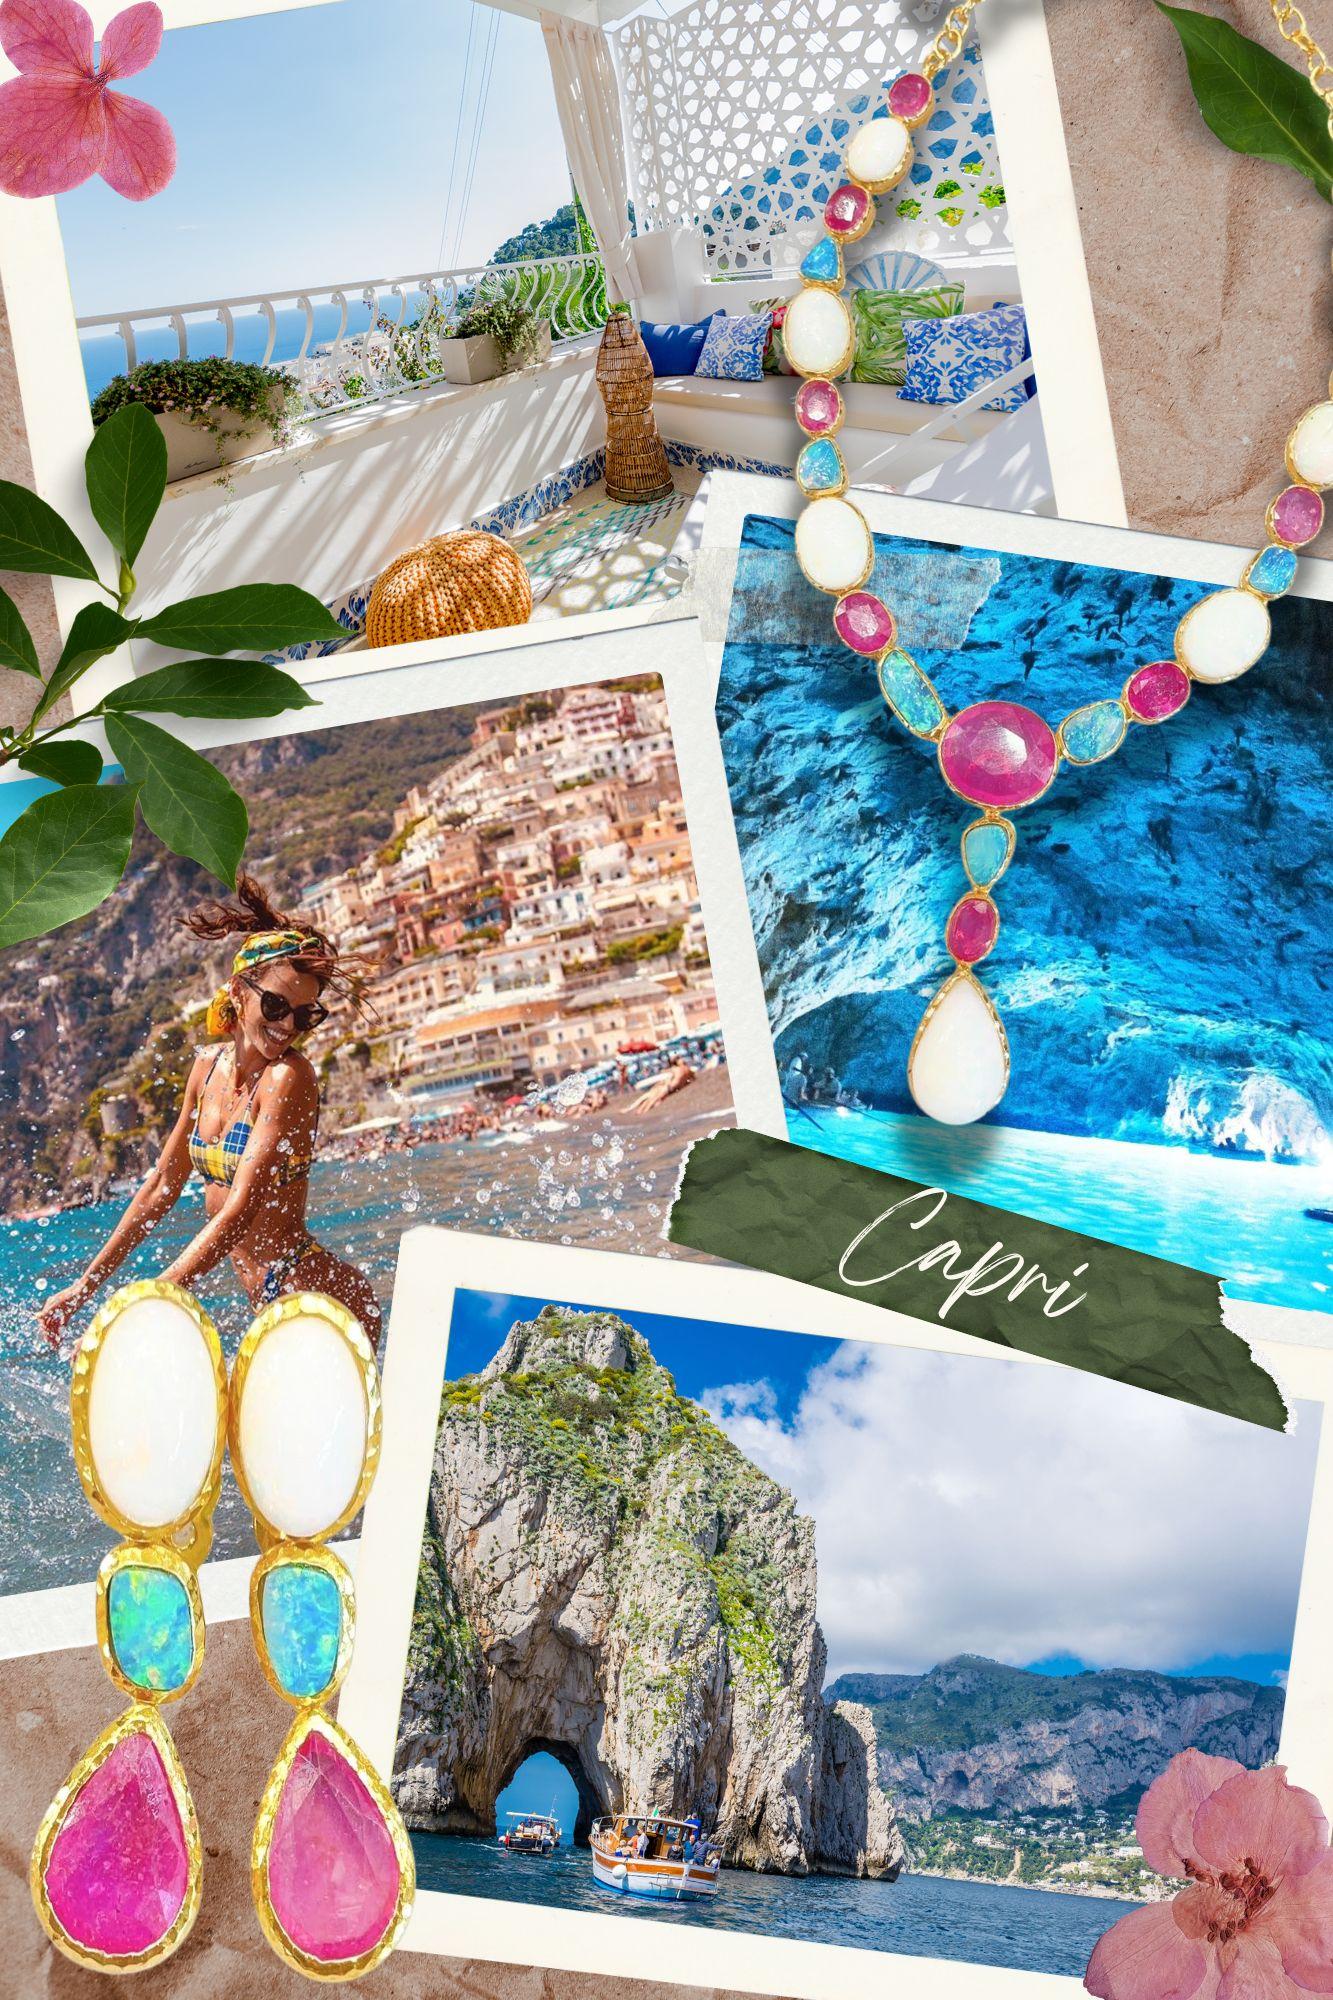 Bochic “Capri” Rose Quartz & Multi Gem Italian Earrings Set 18K Gold&Silver  For Sale 4